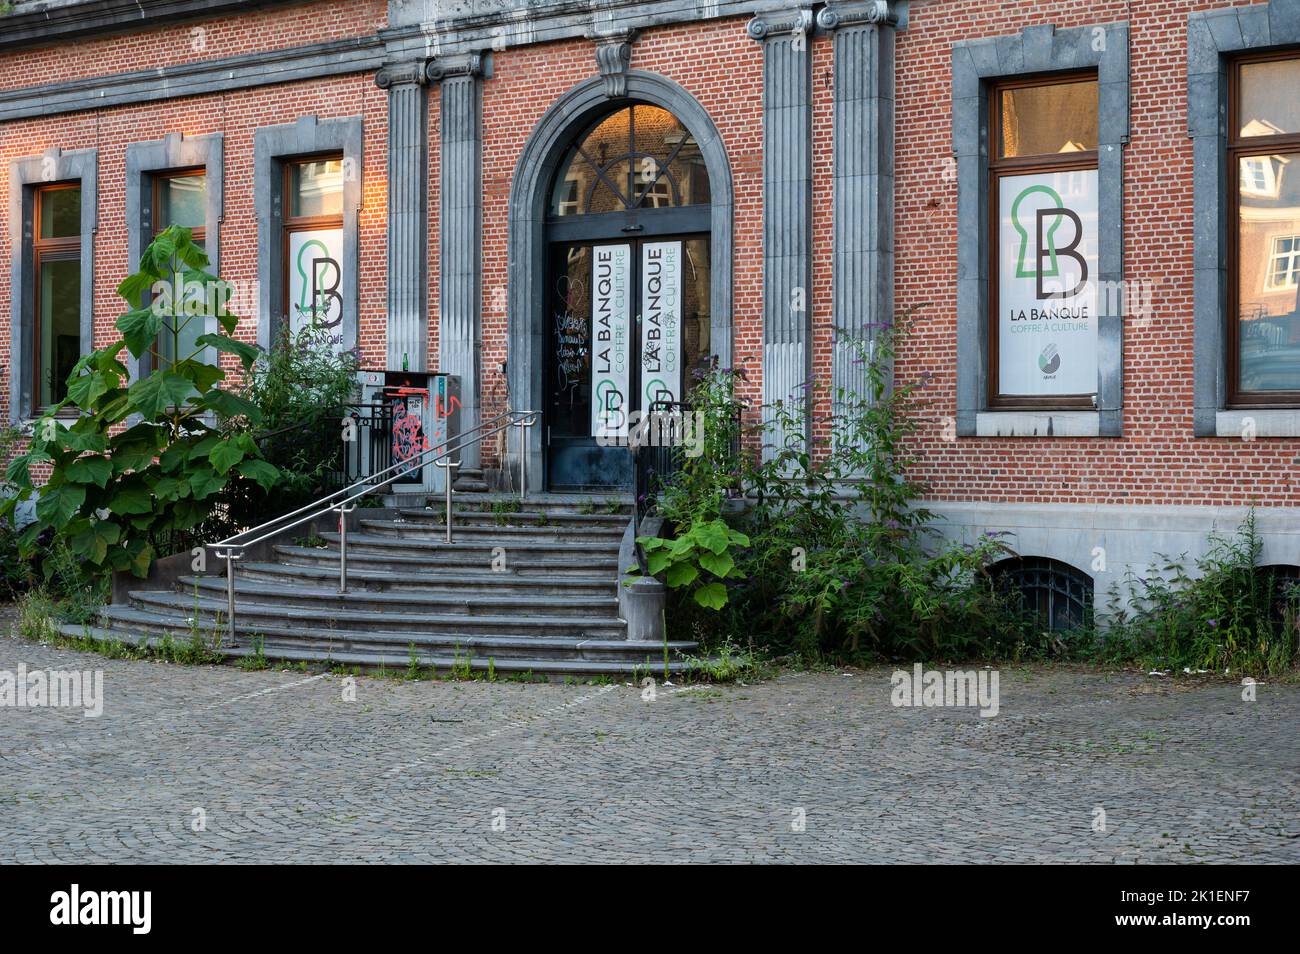 Namur, Wallon Region, Belgium, 07 28 2022 - Facade and entrance of a center for culture Stock Photo